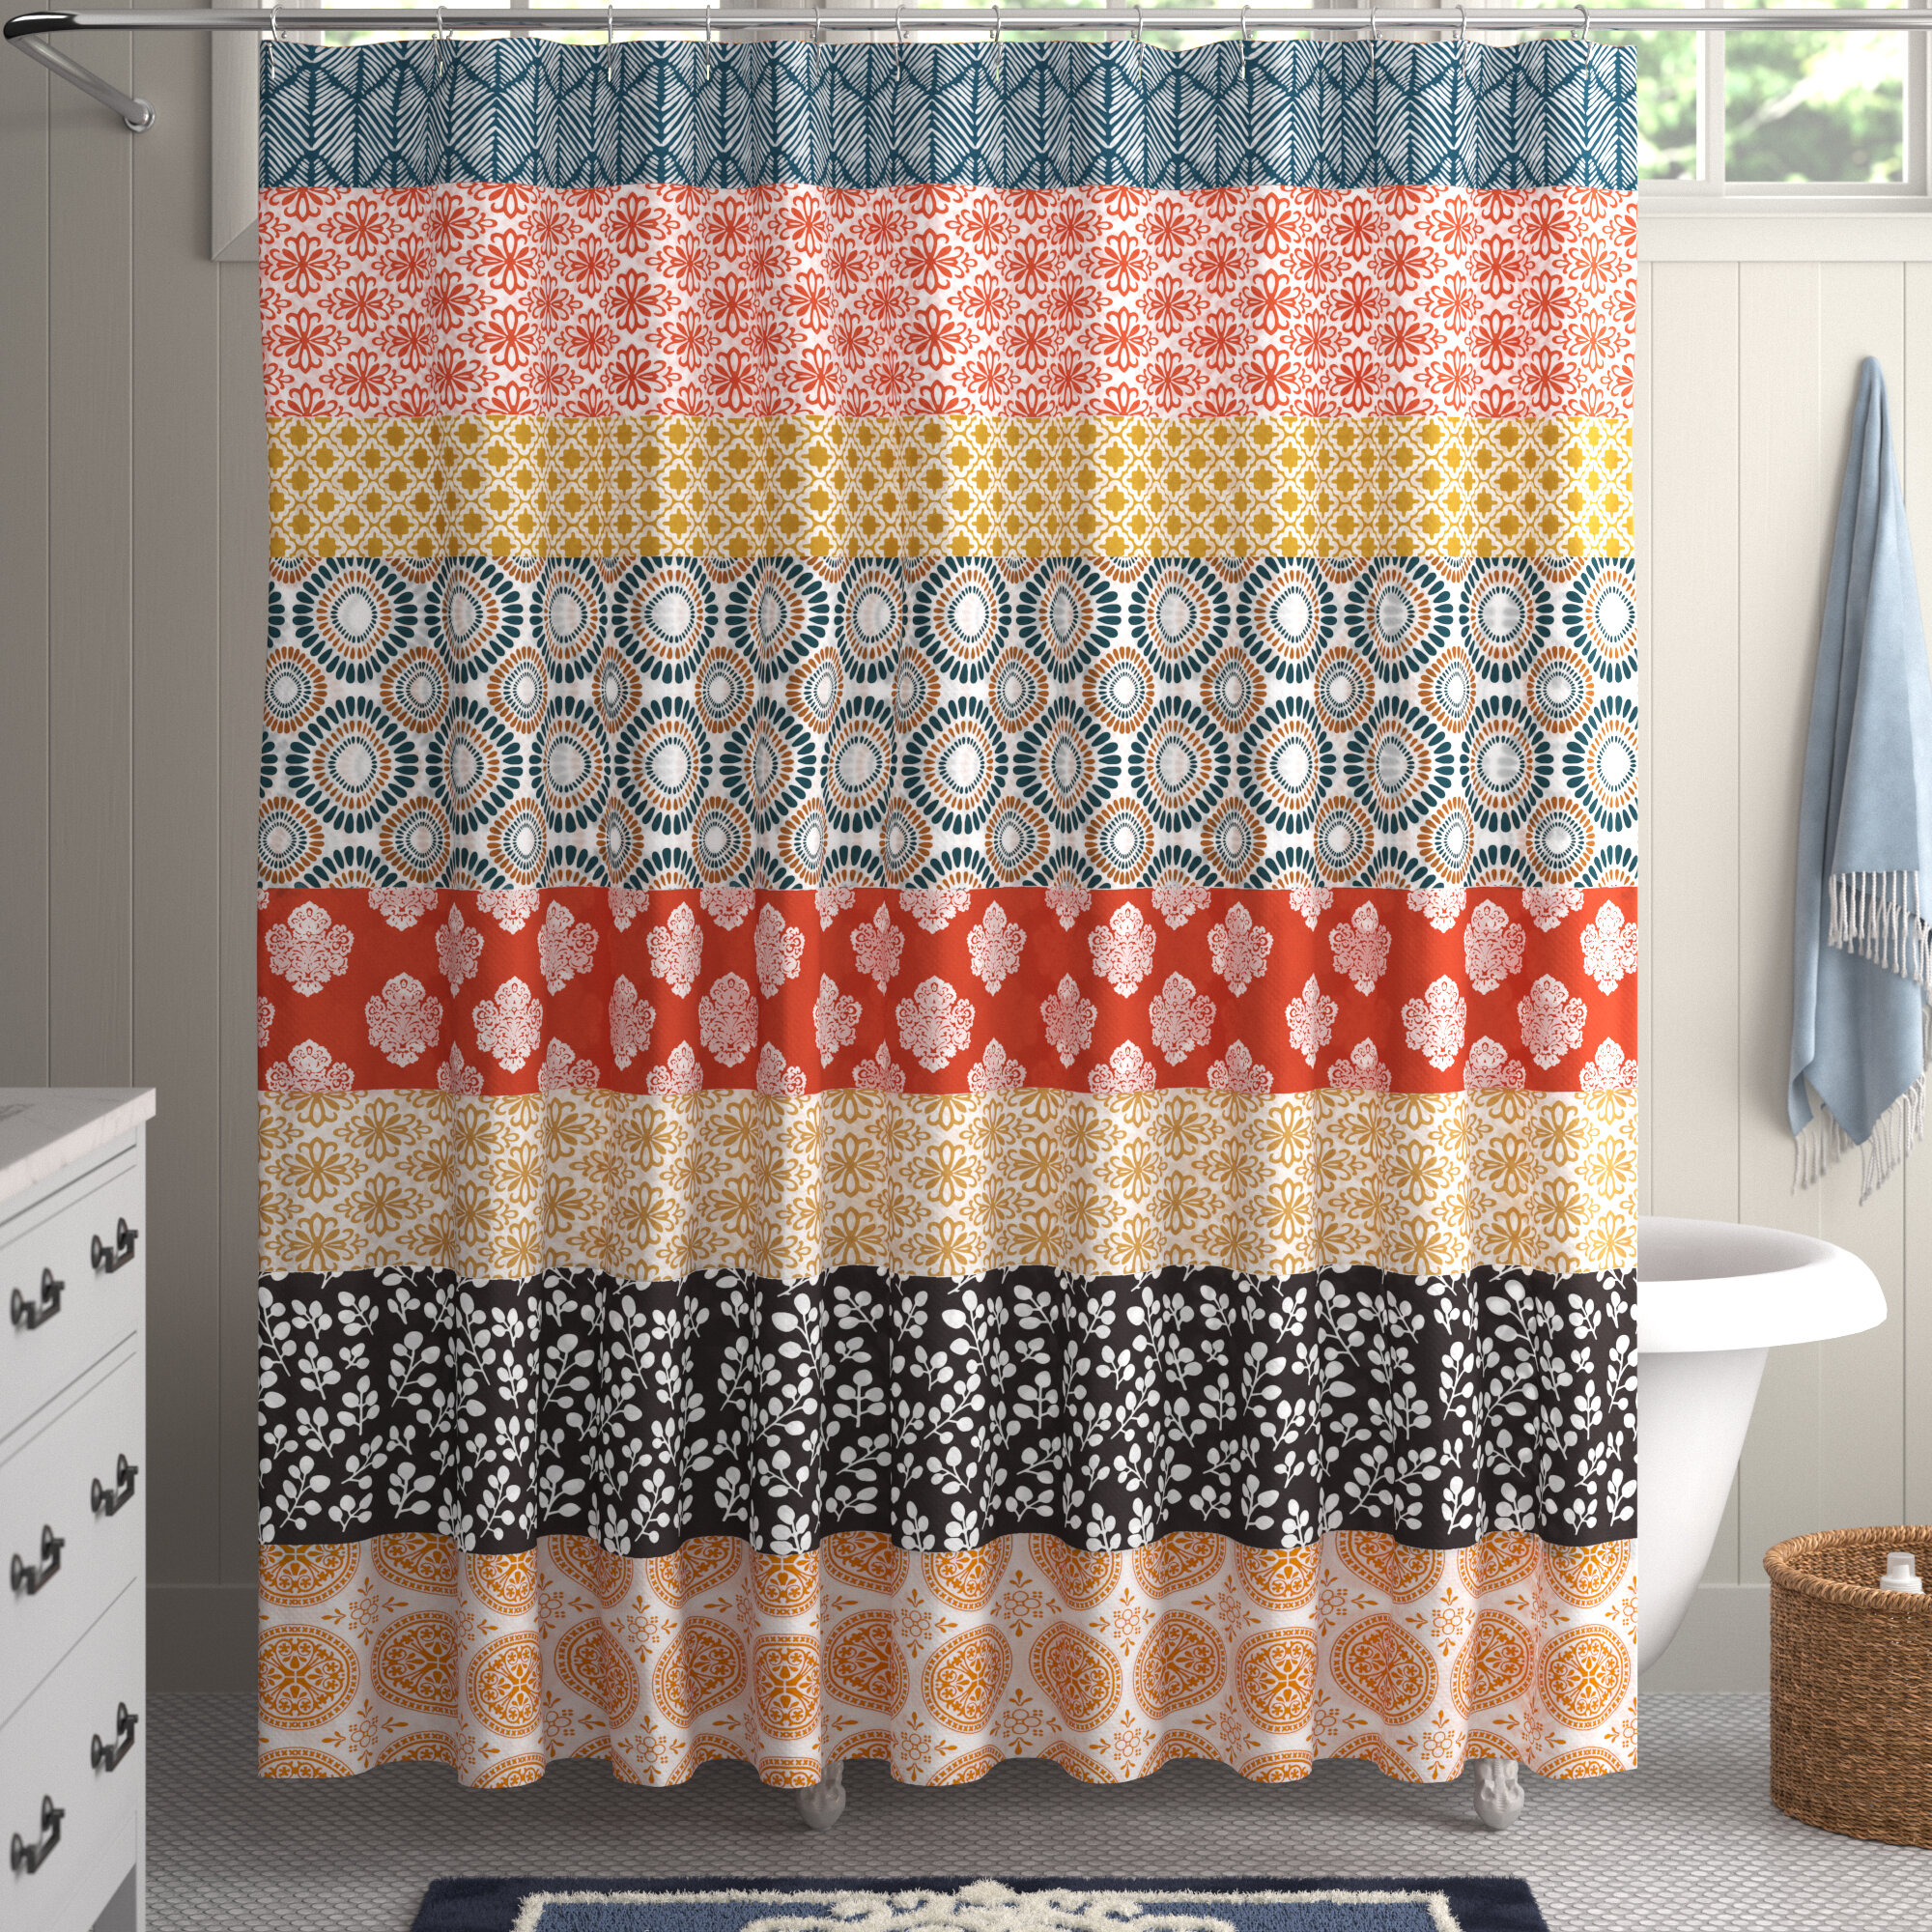 Las vegas Shower Curtains, Bath Mats, & Towels Personalize